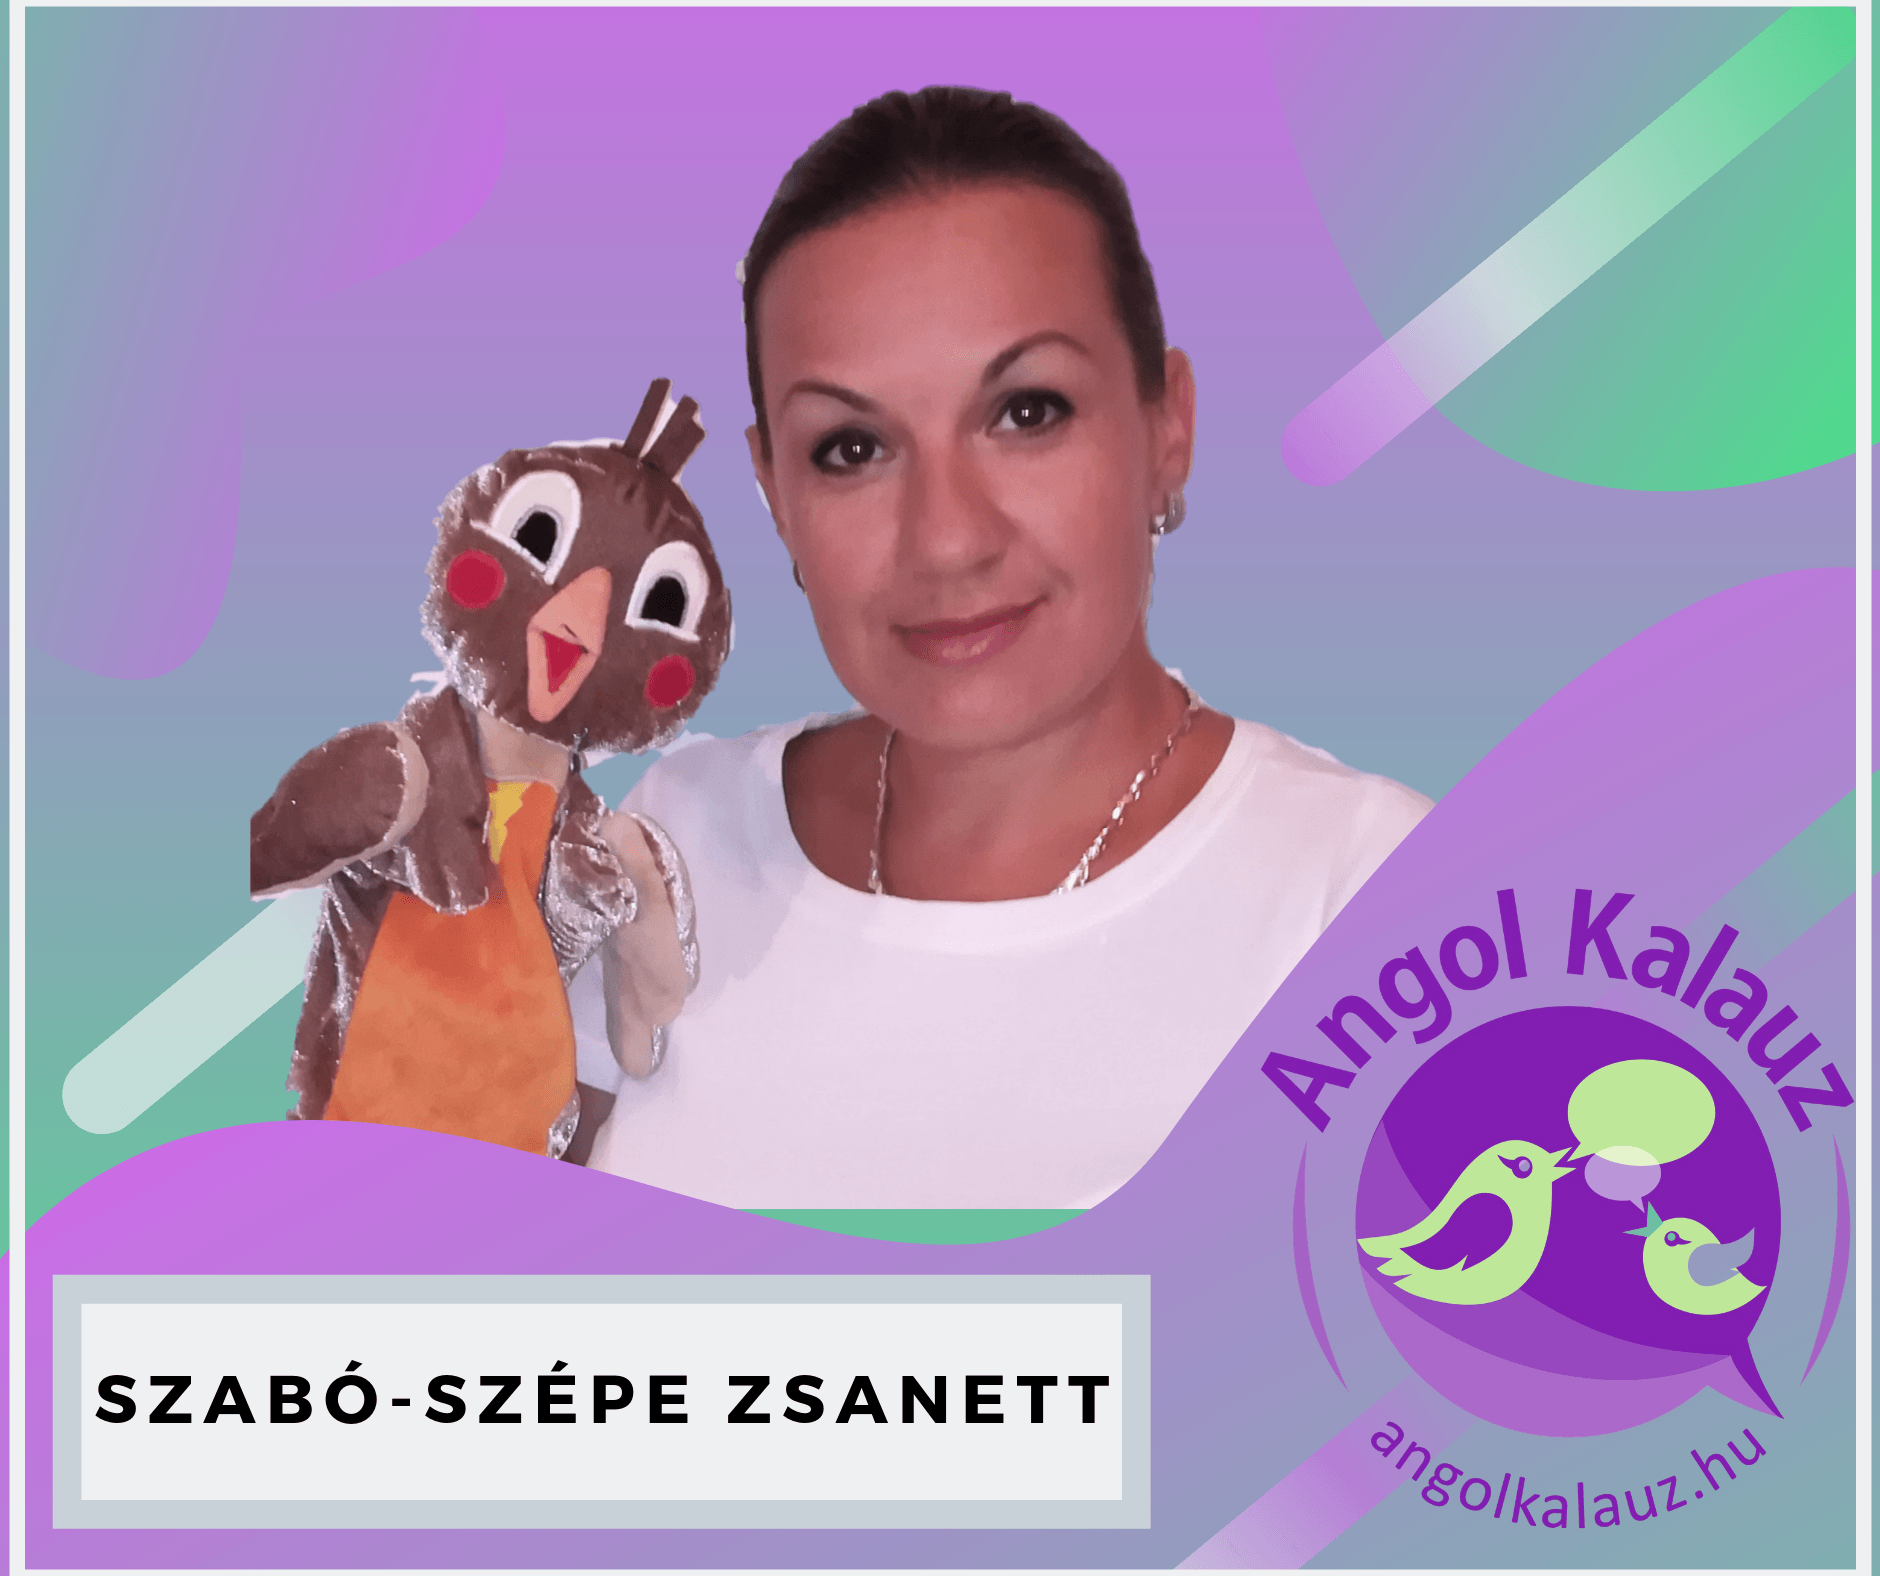 Szabó-Szépe Zsanett